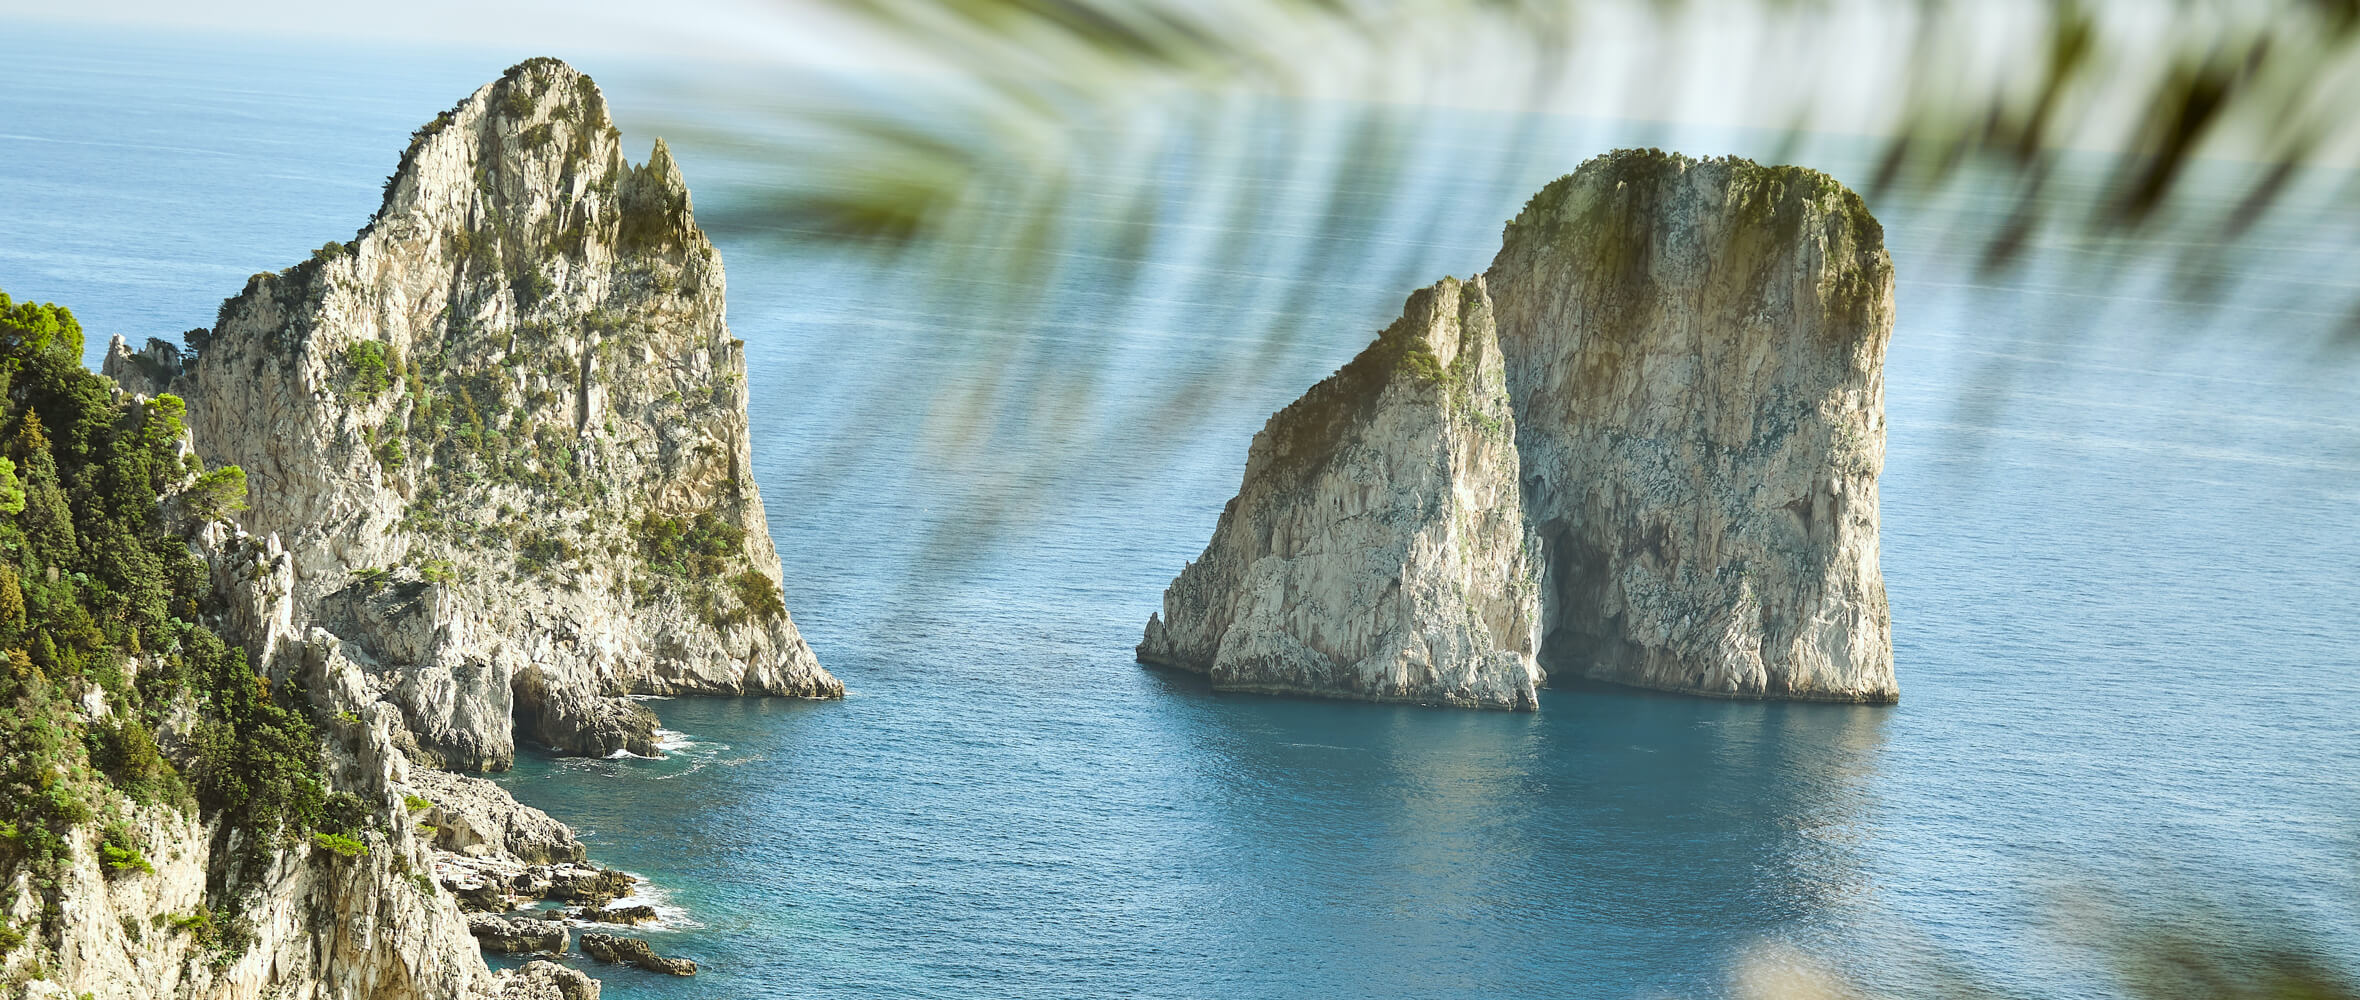 Limoncello di Capri sea stacks